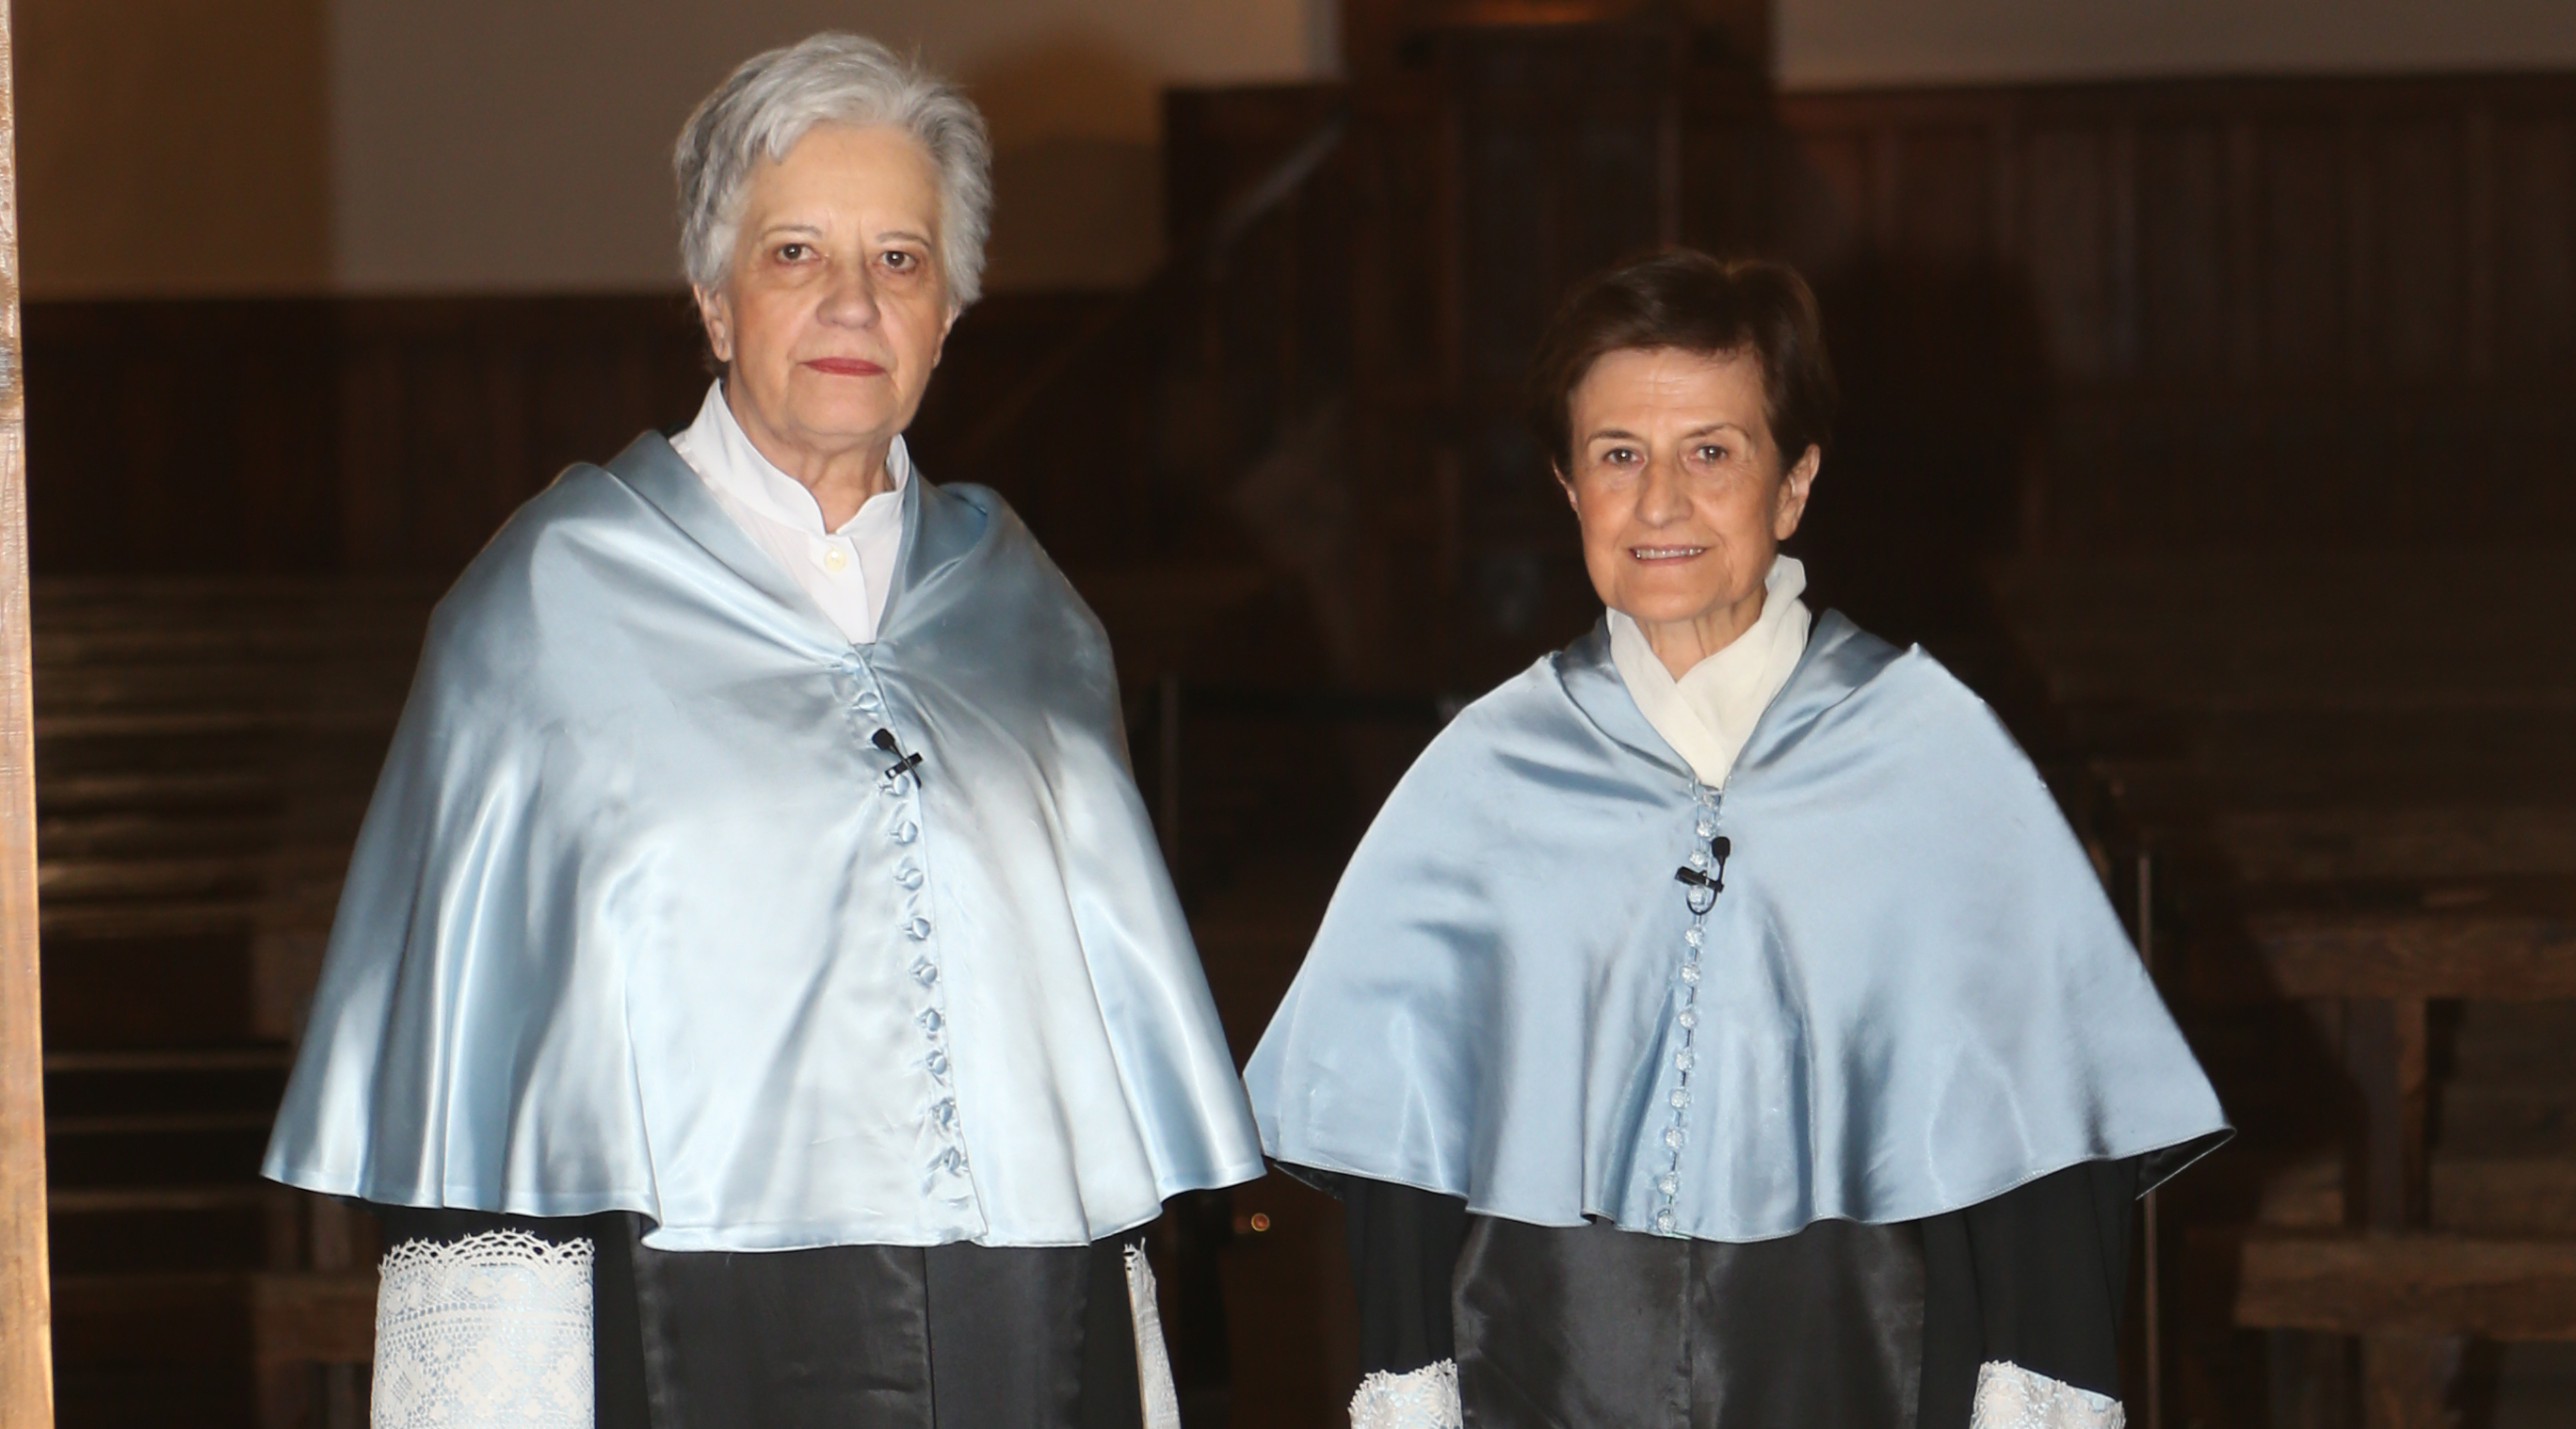 Rita Segato se convertirá el martes en la décima mujer en recibir el doctorado ‘honoris causa’ por la Universidad de Salamanca